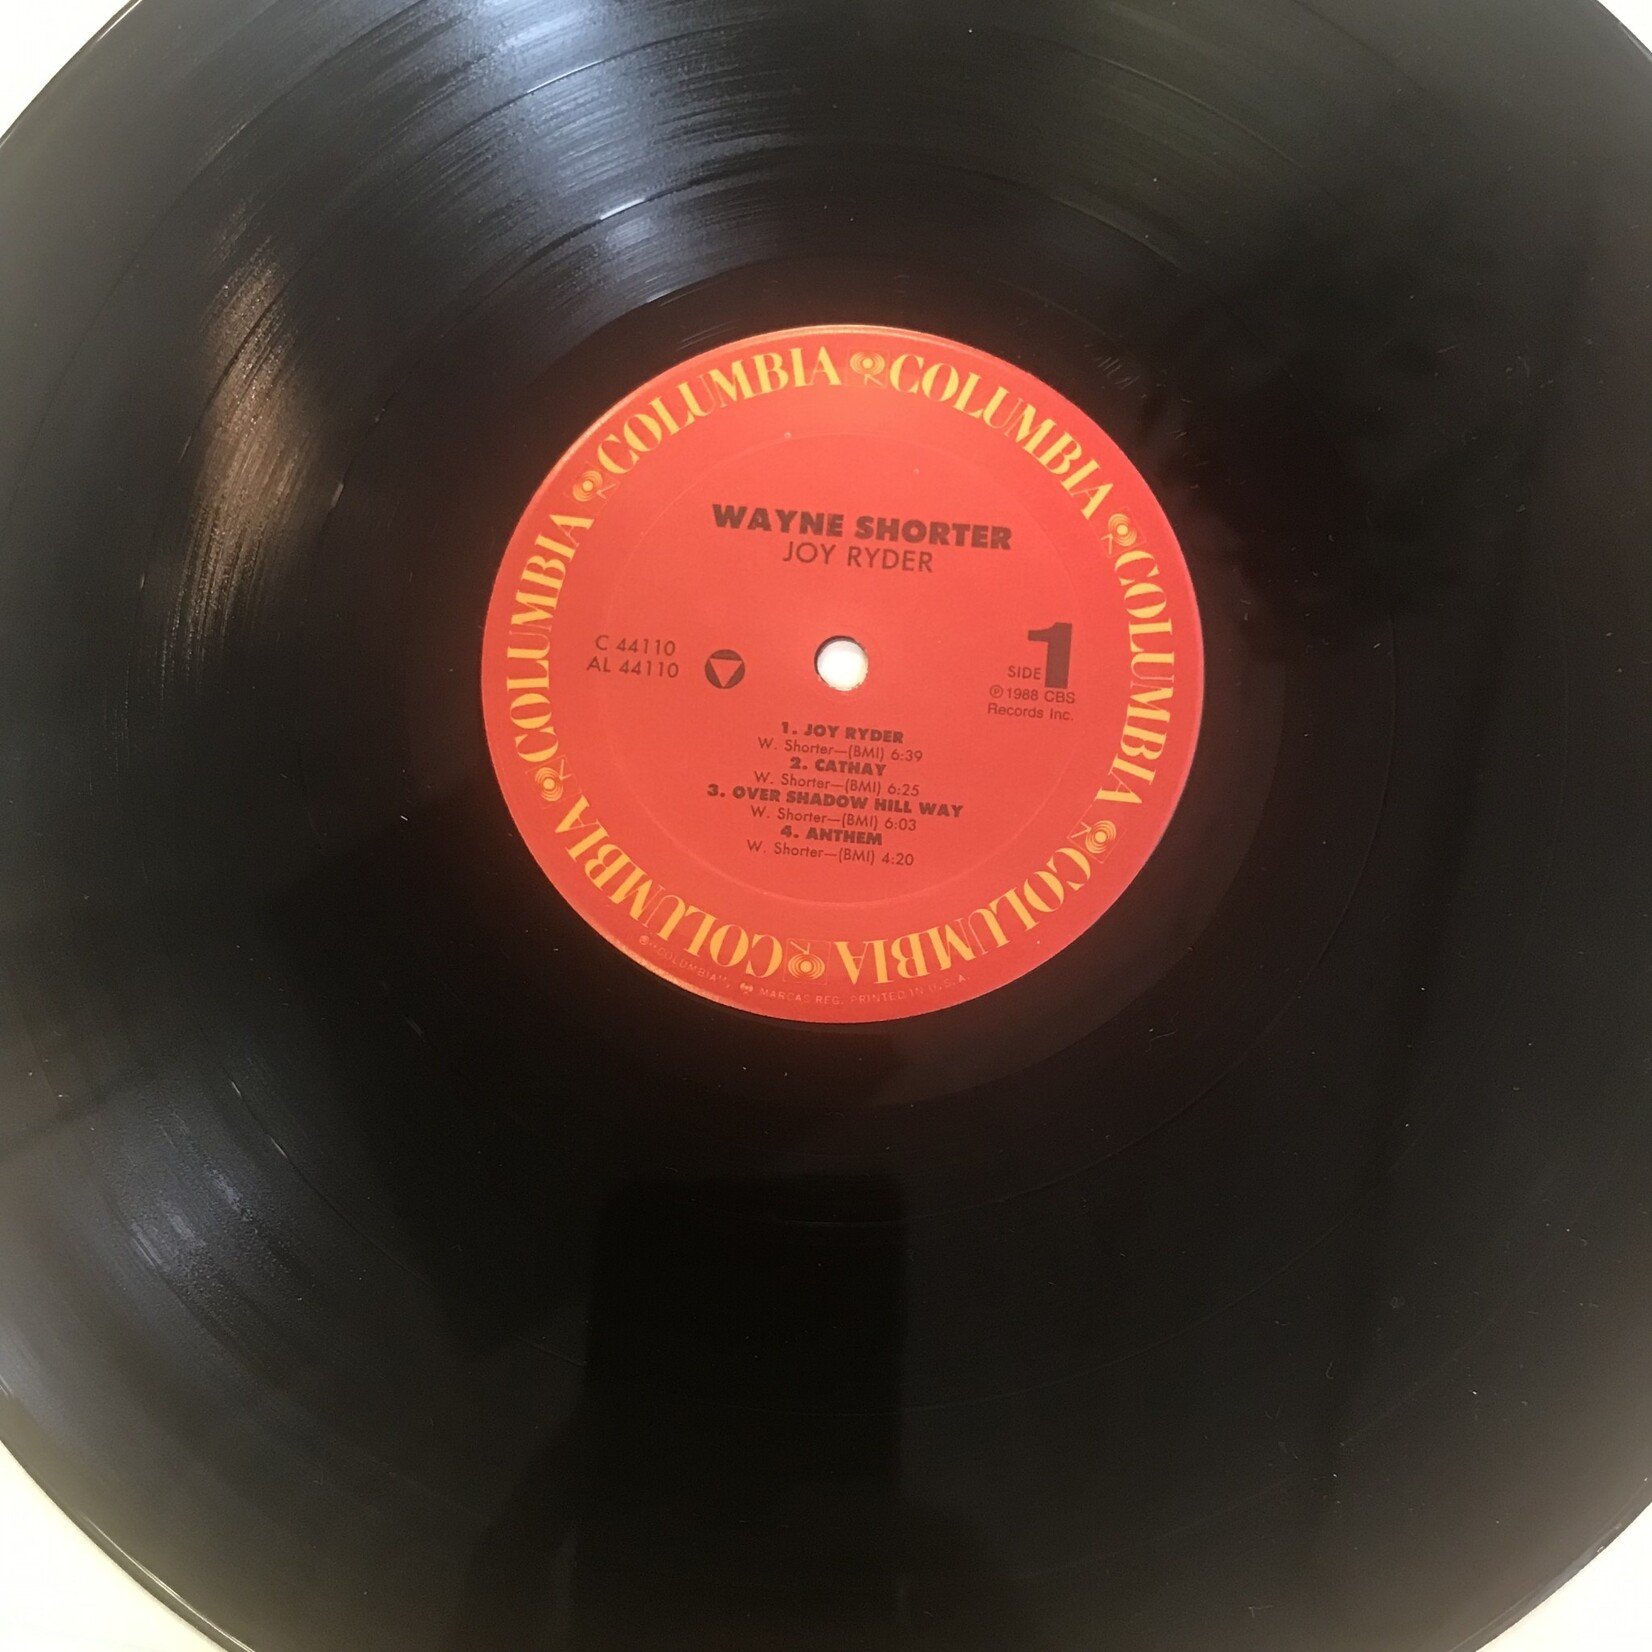 Wayne Shorter - Joy Rider - C 44110 - Vinyl LP (USED)